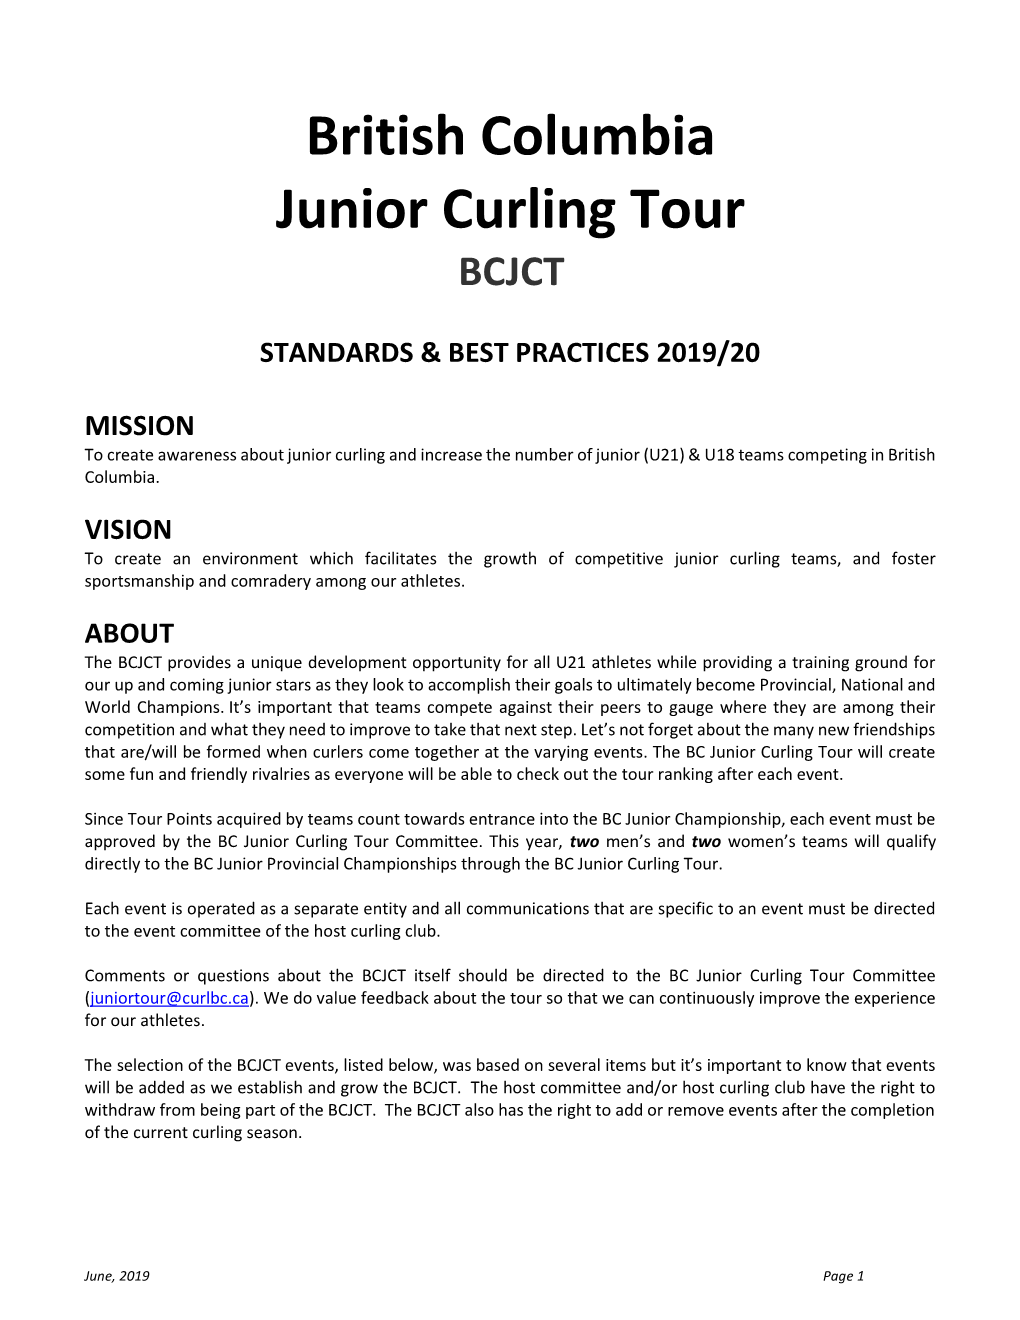 British Columbia Junior Curling Tour BCJCT